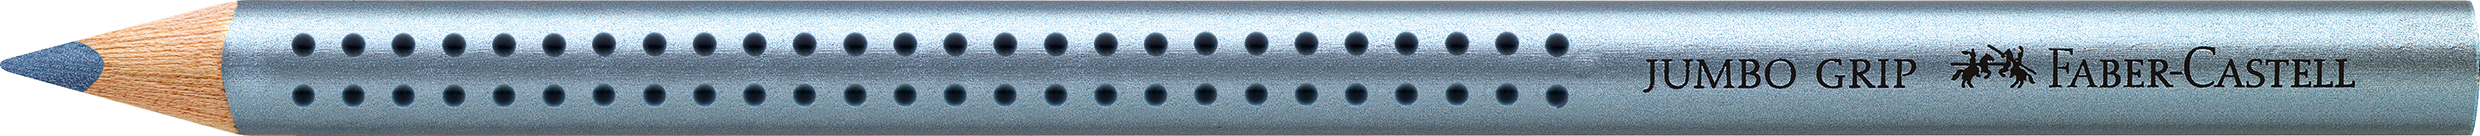 FABER-CASTELL JUMBO GRIP Metallic 110984 bleu